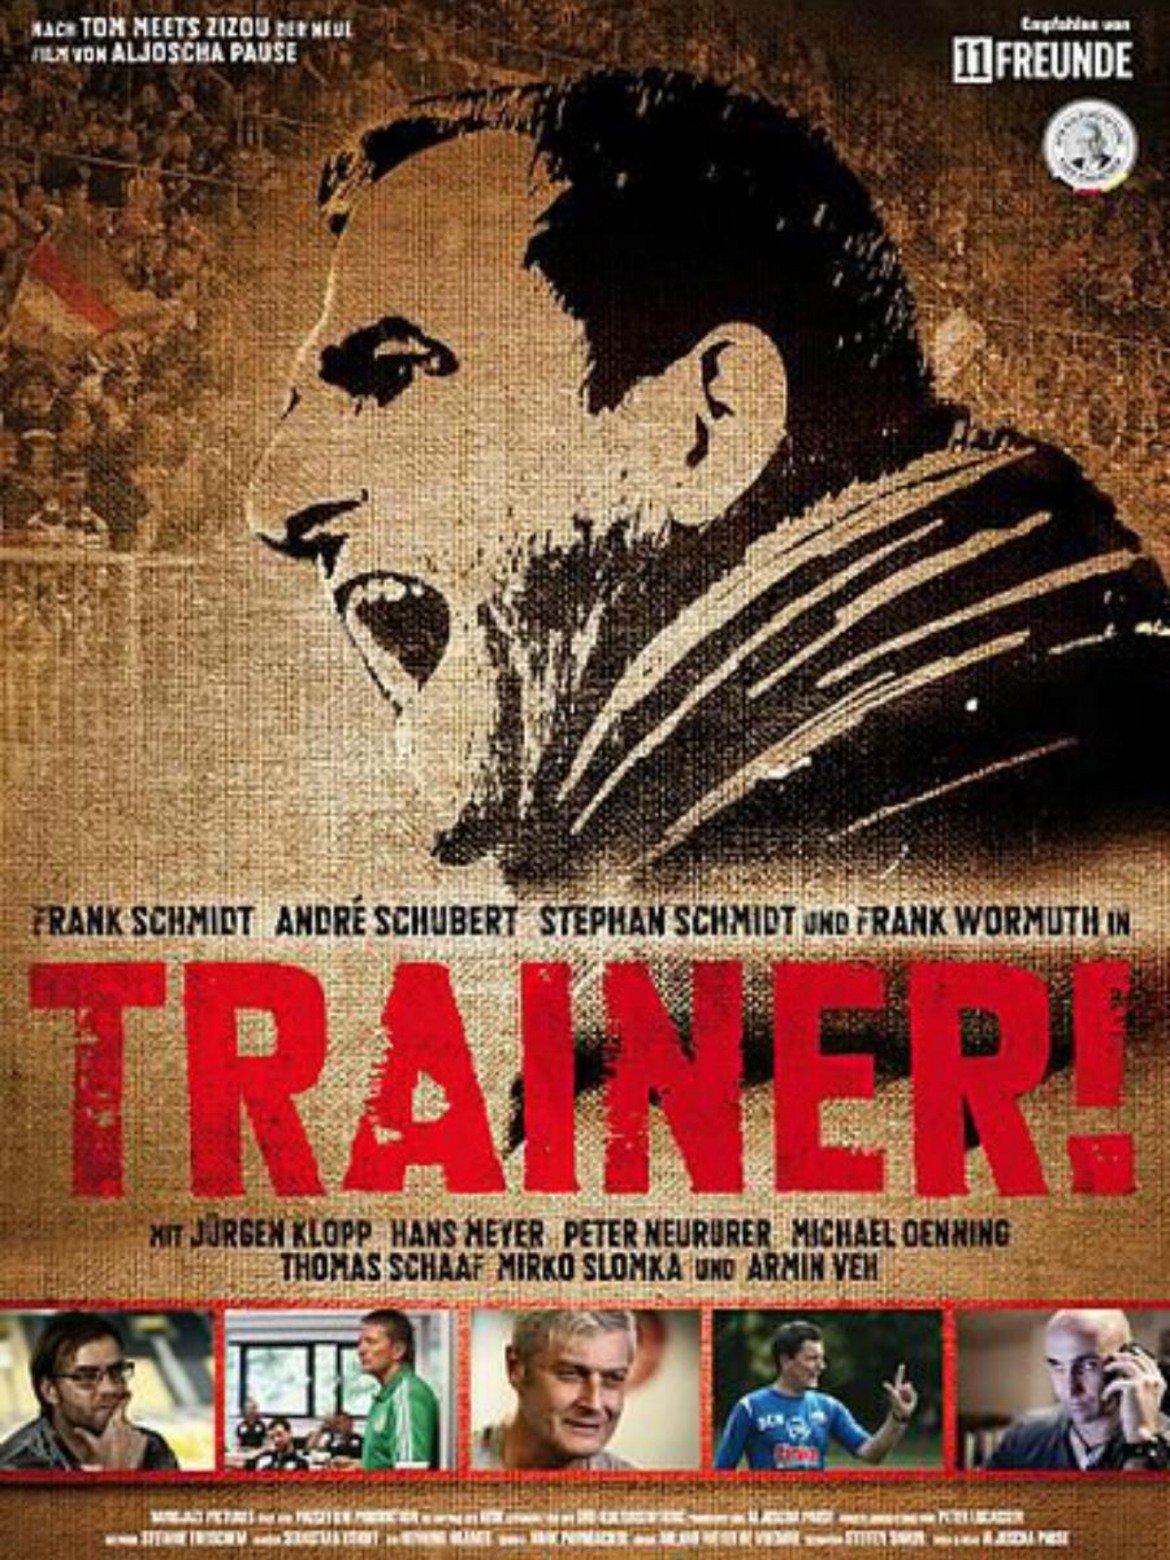 Trainer!
Филмът е за трима сравнително неизвестни германски треньори - Франк Шмит, Андре Шуберт и Стефан Шмит. В него участва и Юрген Клоп, който разказва какъв е животът на мениджъра и какви жертви изисква той.